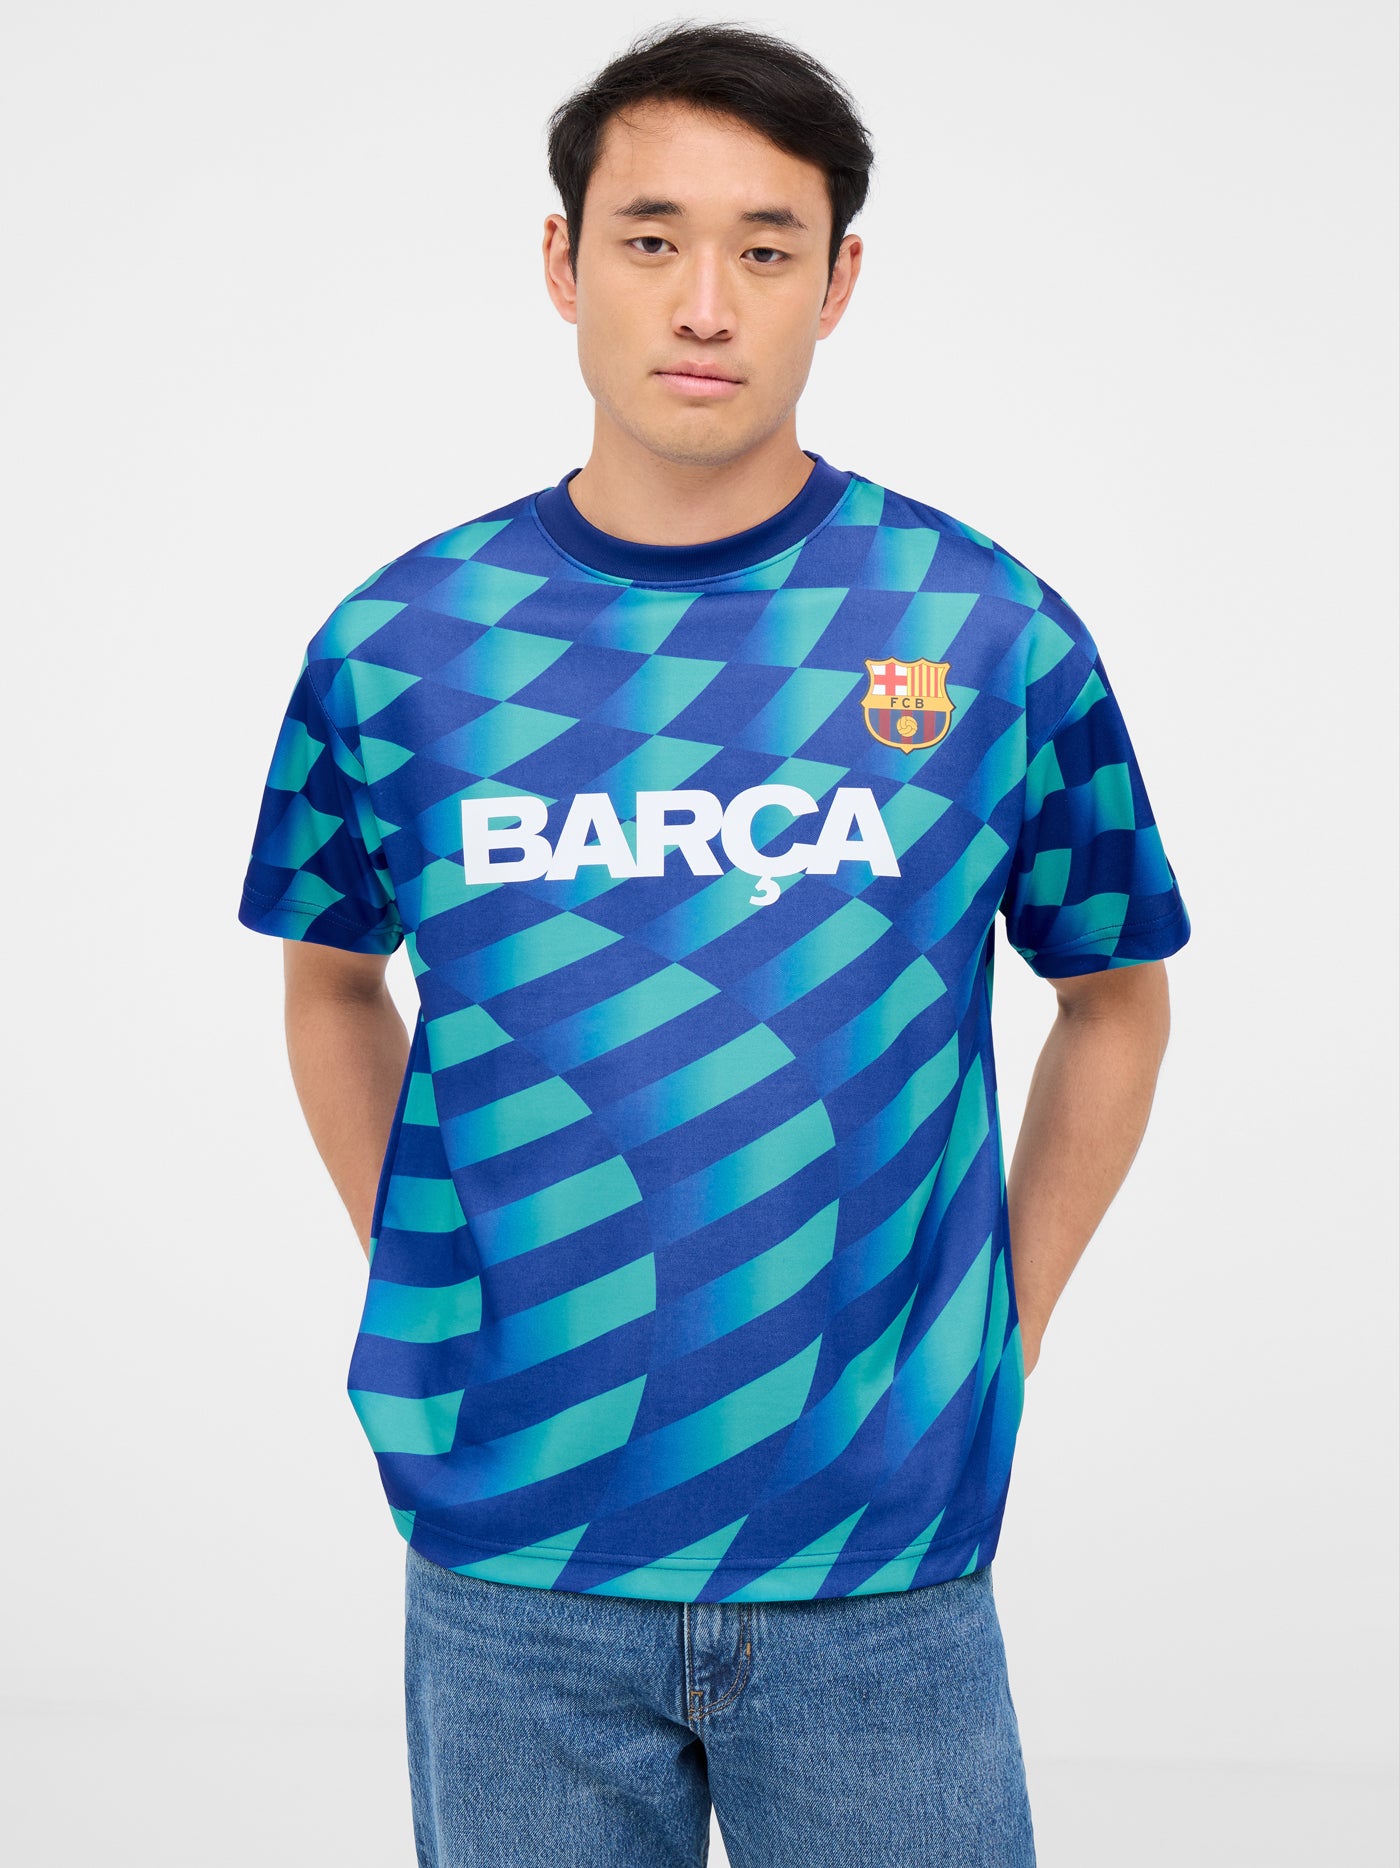 Camiseta estampada turquesa escudo Barça